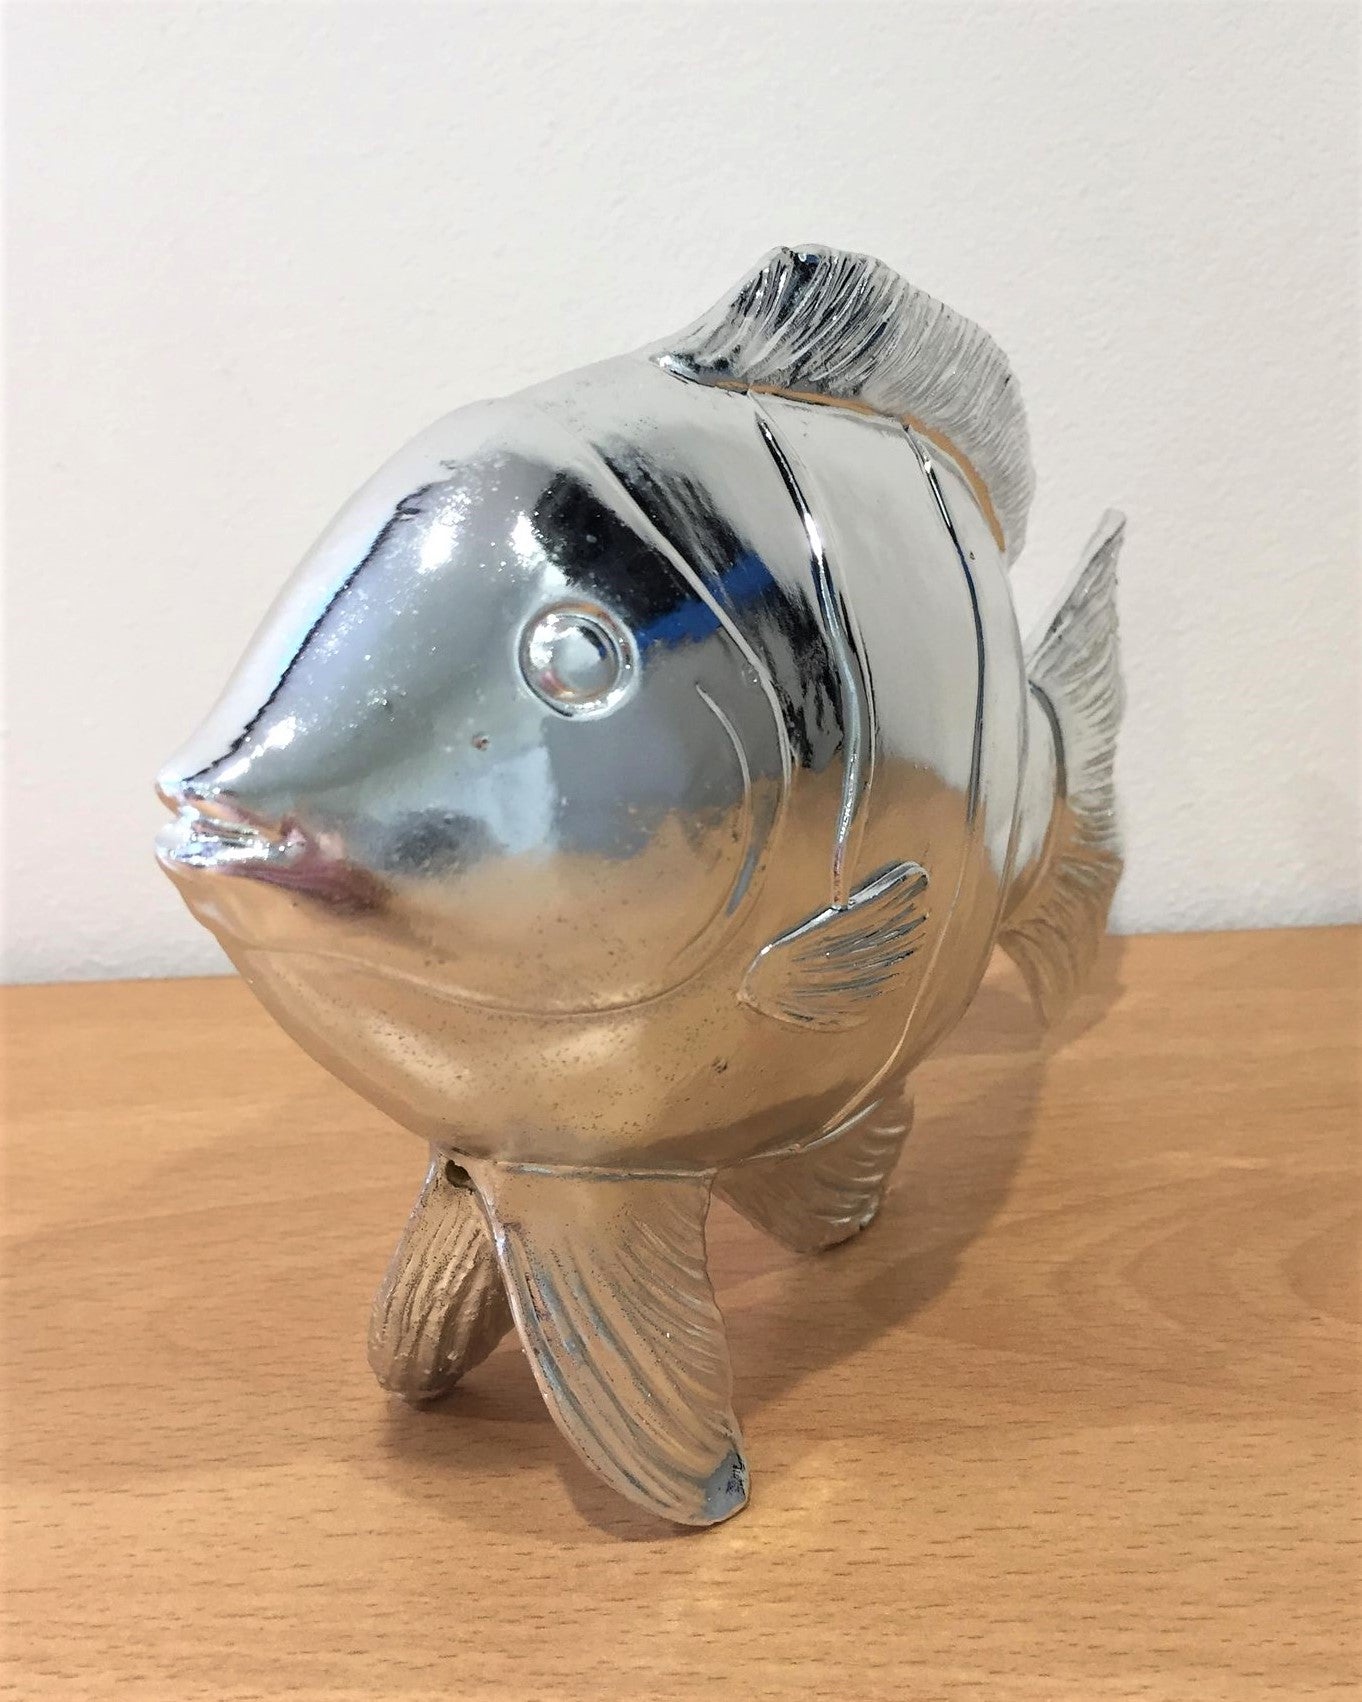 Silver Fish